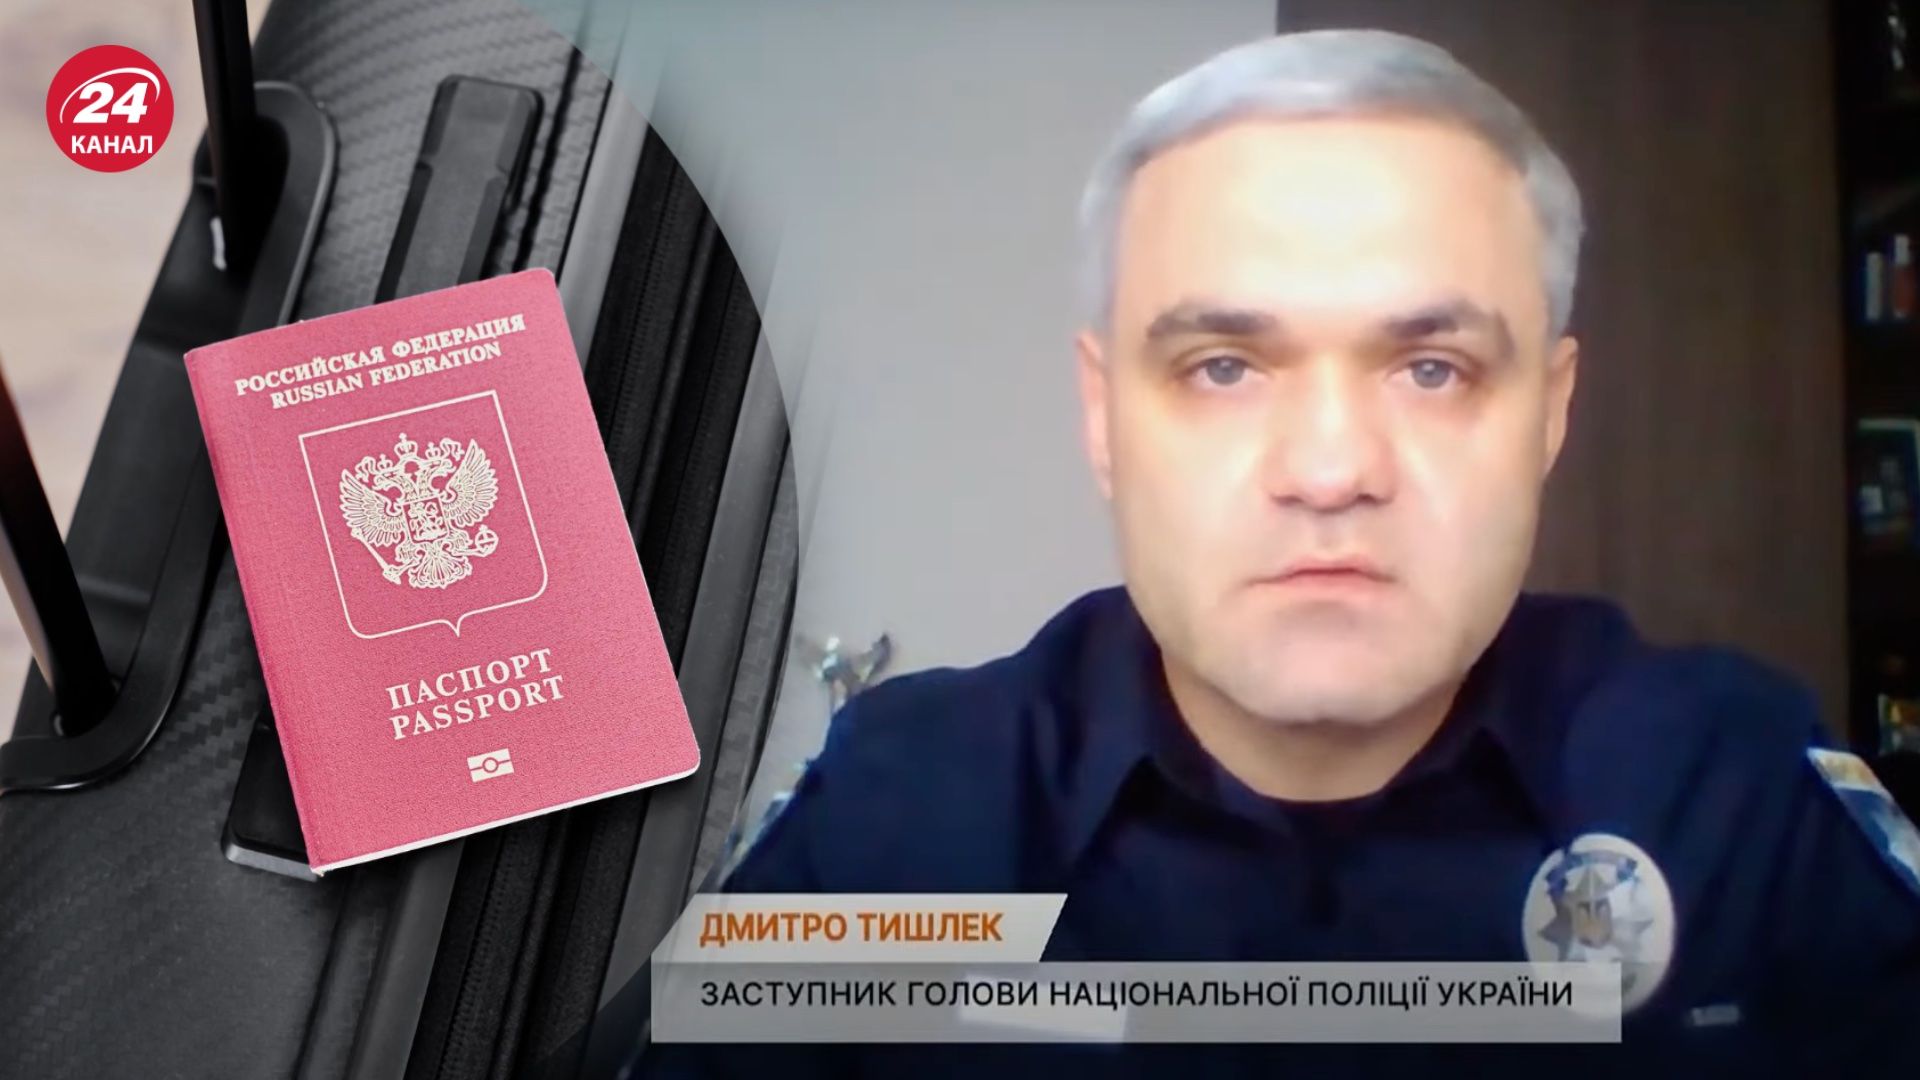 У Тишлека дружина з паспортом Росії і теща-мільйонерка